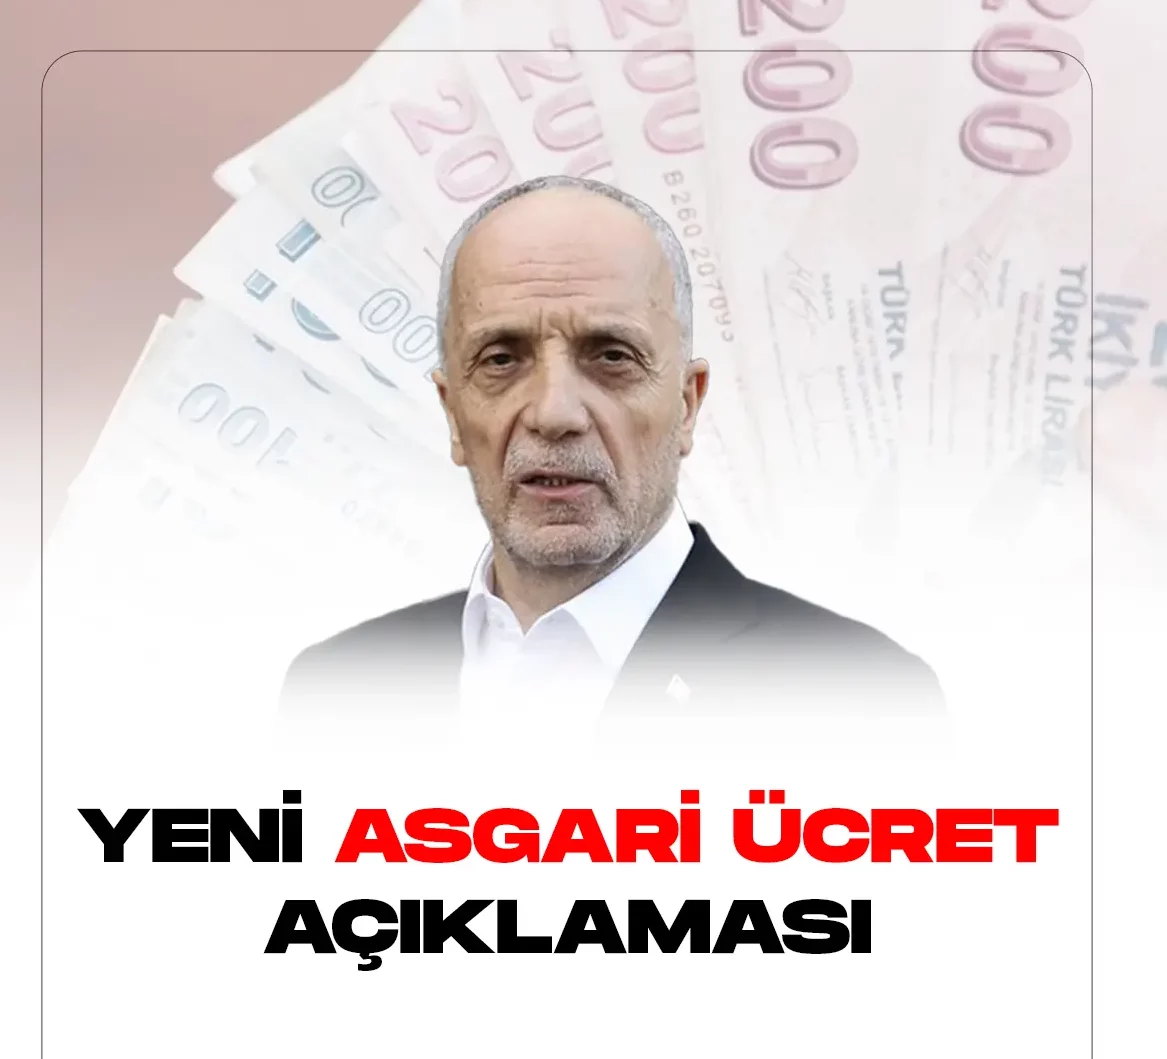 Türk-İş Genel Başkanı Ergün Atalay, asgari ücretle ilgili daha önce yaptığı kırmızı çizgimiz açıklamasına tepki gelince. Yeni asgari ücret açıklaması yapıyor.